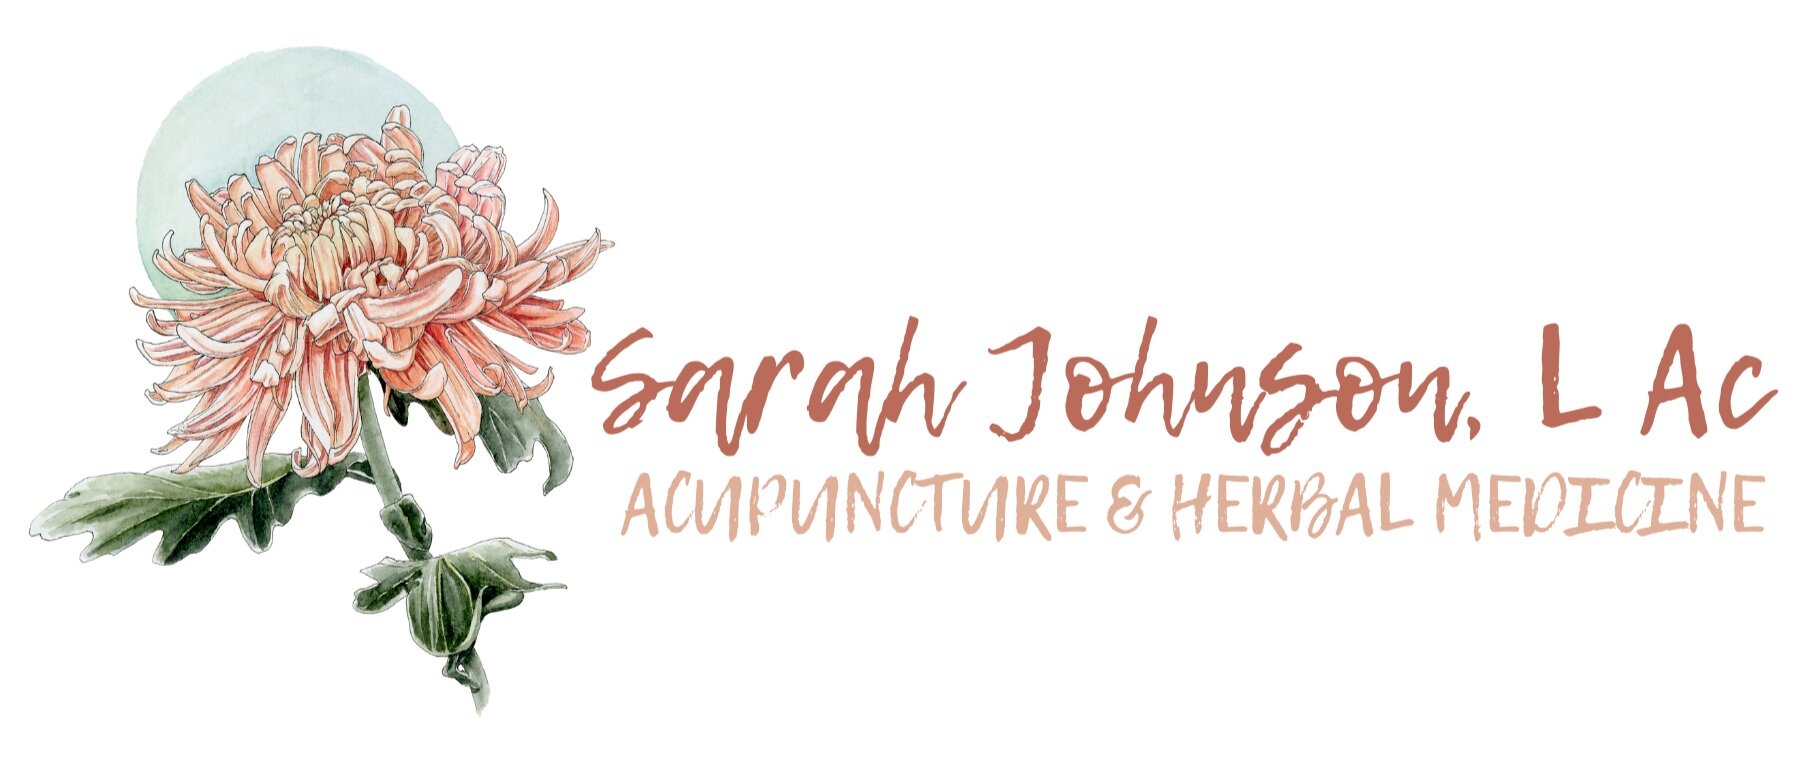 Sarah Johnson L. Ac.